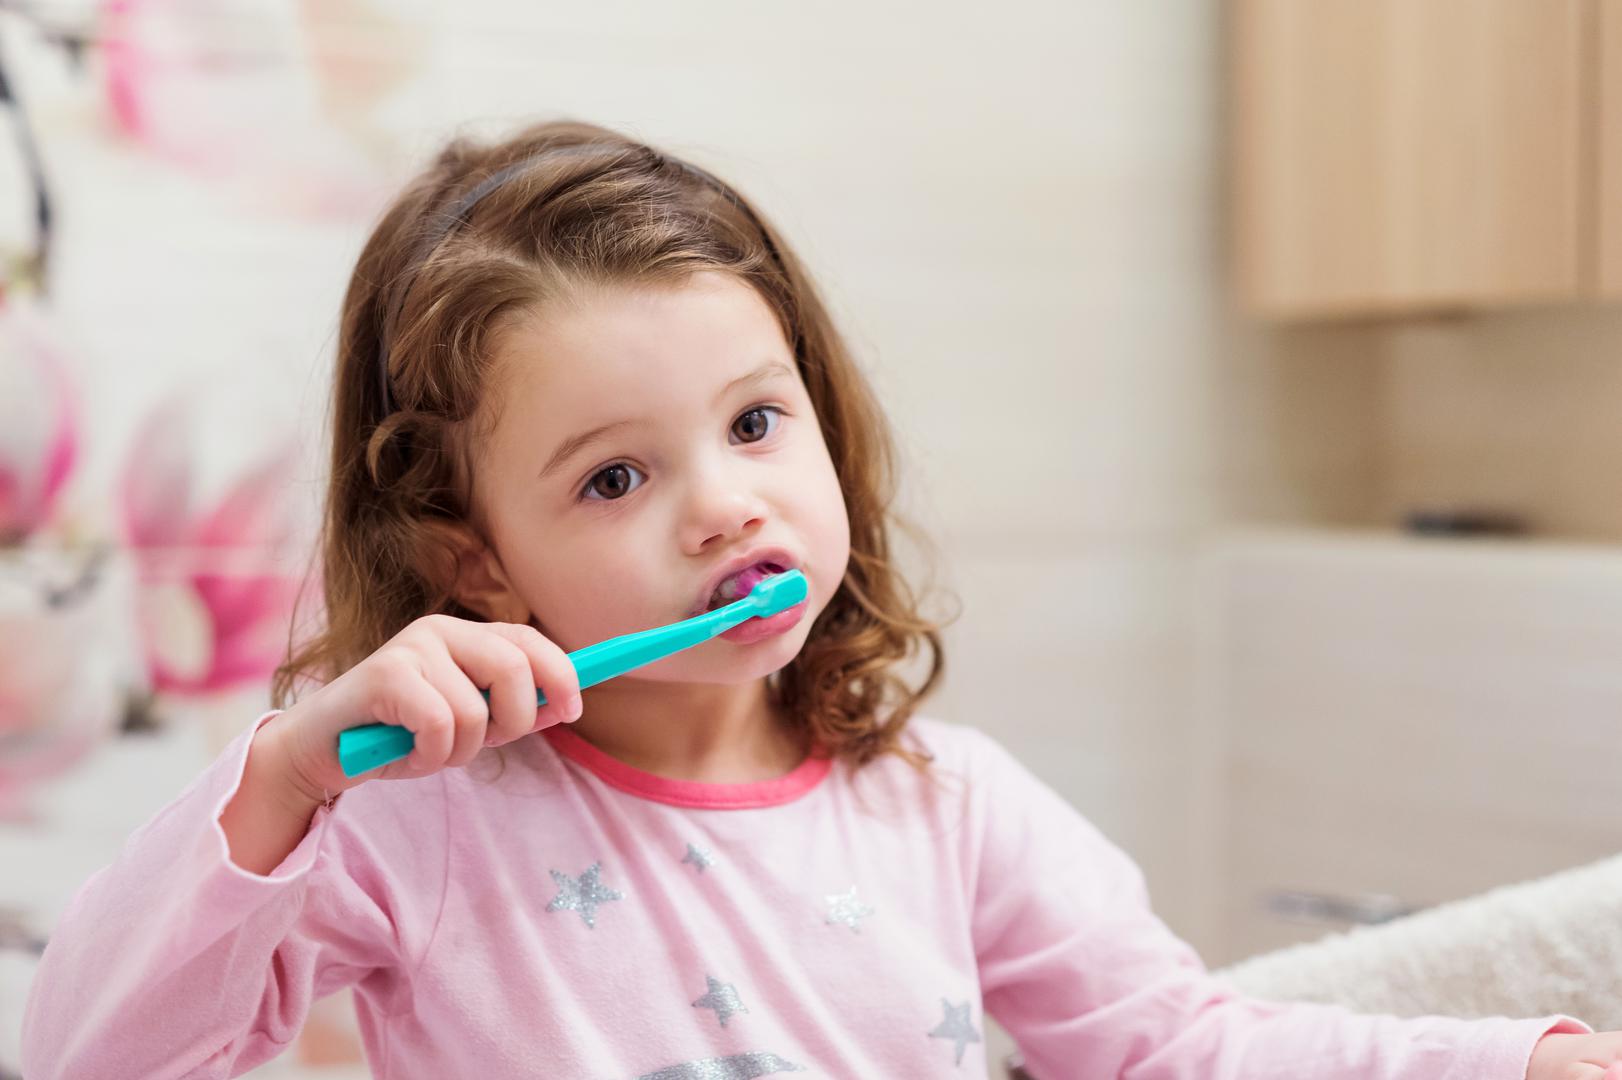 Kvarenje zuba vodeći je uzrok odlaska djece u dobi od šest do deset godina u bolnicu. Sve veći broj mlađe djece plombira ili vadi mliječne zube. Briga o zubima kod kuće je važnija nego ikad. Dr. Sam Jethwa, iz Bespoke Smilea, kaže za The Sun.: 'Zaista je važno da vaše dijete održava dobru oralnu higijenu, čak i ako još uvijek ima mliječne zube'.